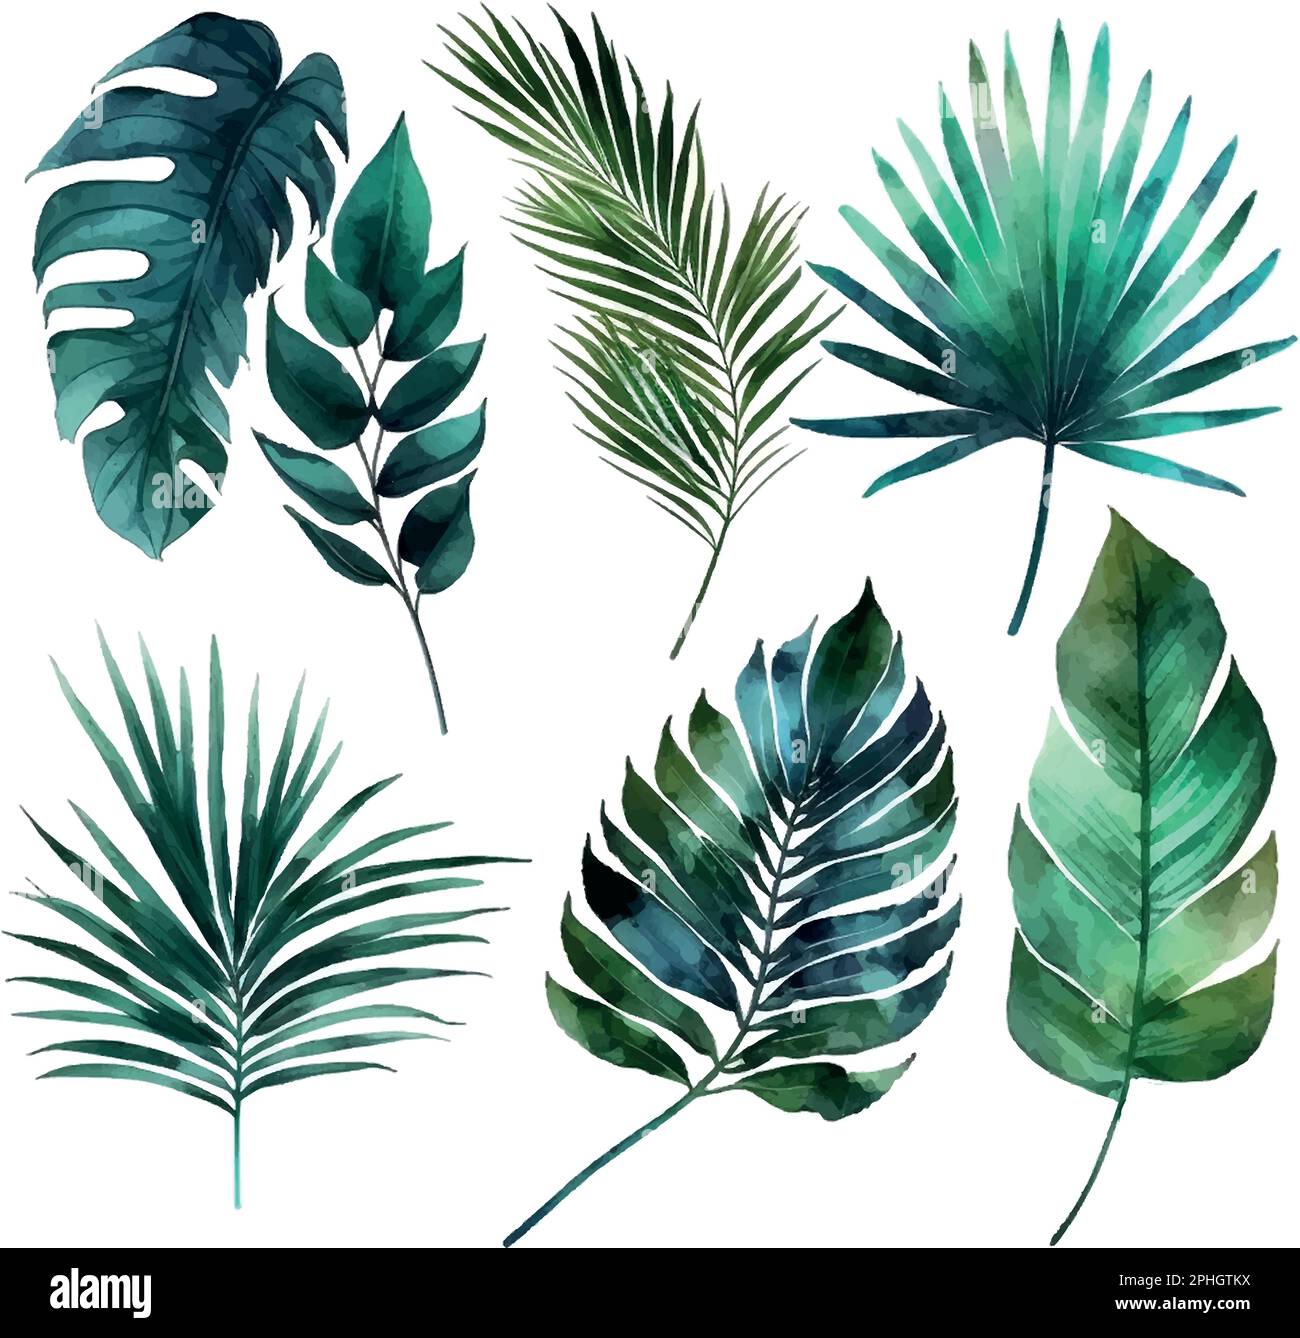 Feuilles tropicales exotiques. Illustration de feuilles dessinées à la main en aquarelle. Illustration de Vecteur